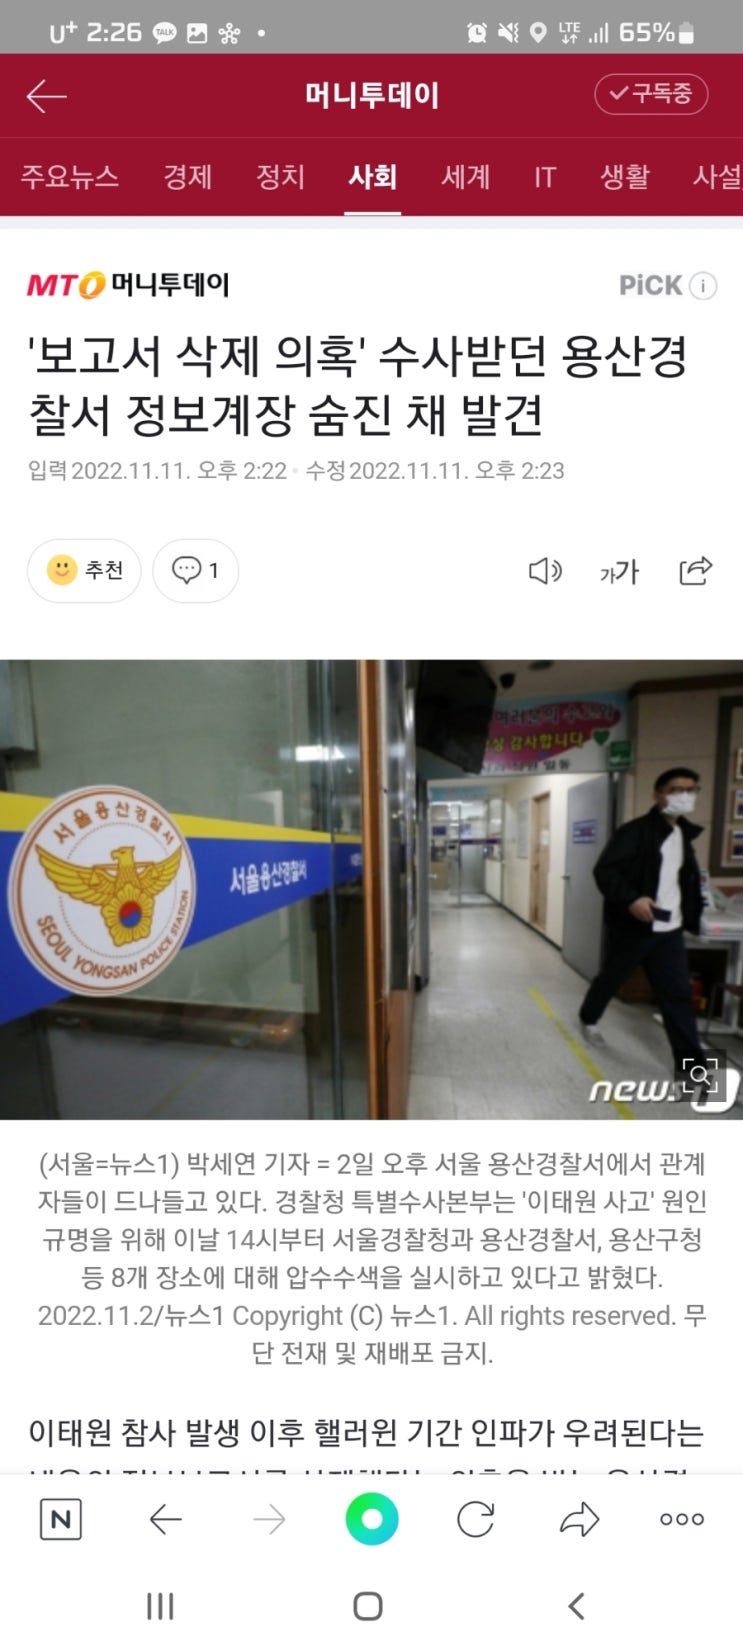 '보고서 삭제 의혹' 수사받던 용산경찰서 정보계장 숨진 채 발견